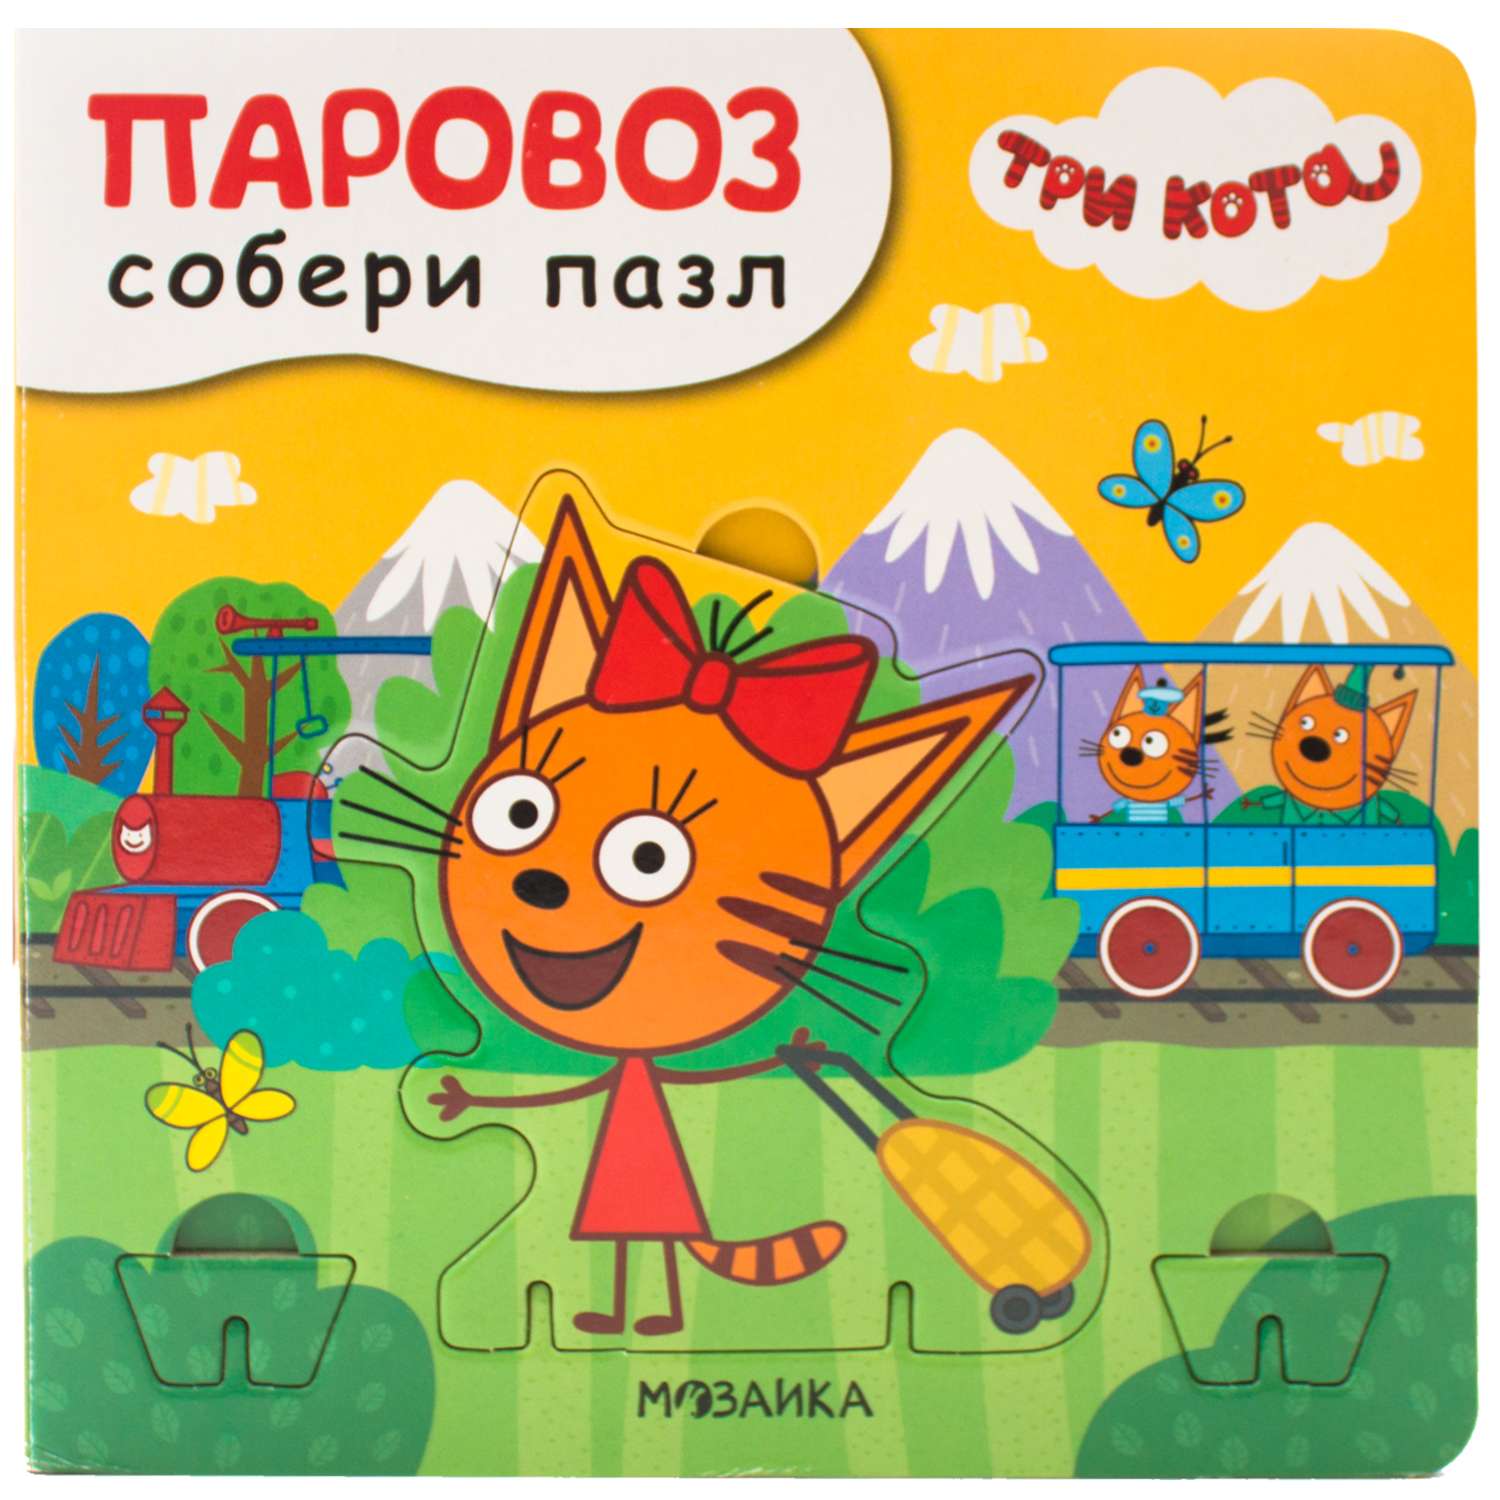 Книга МОЗАИКА kids Три кота Собери пазл Паровоз - фото 1